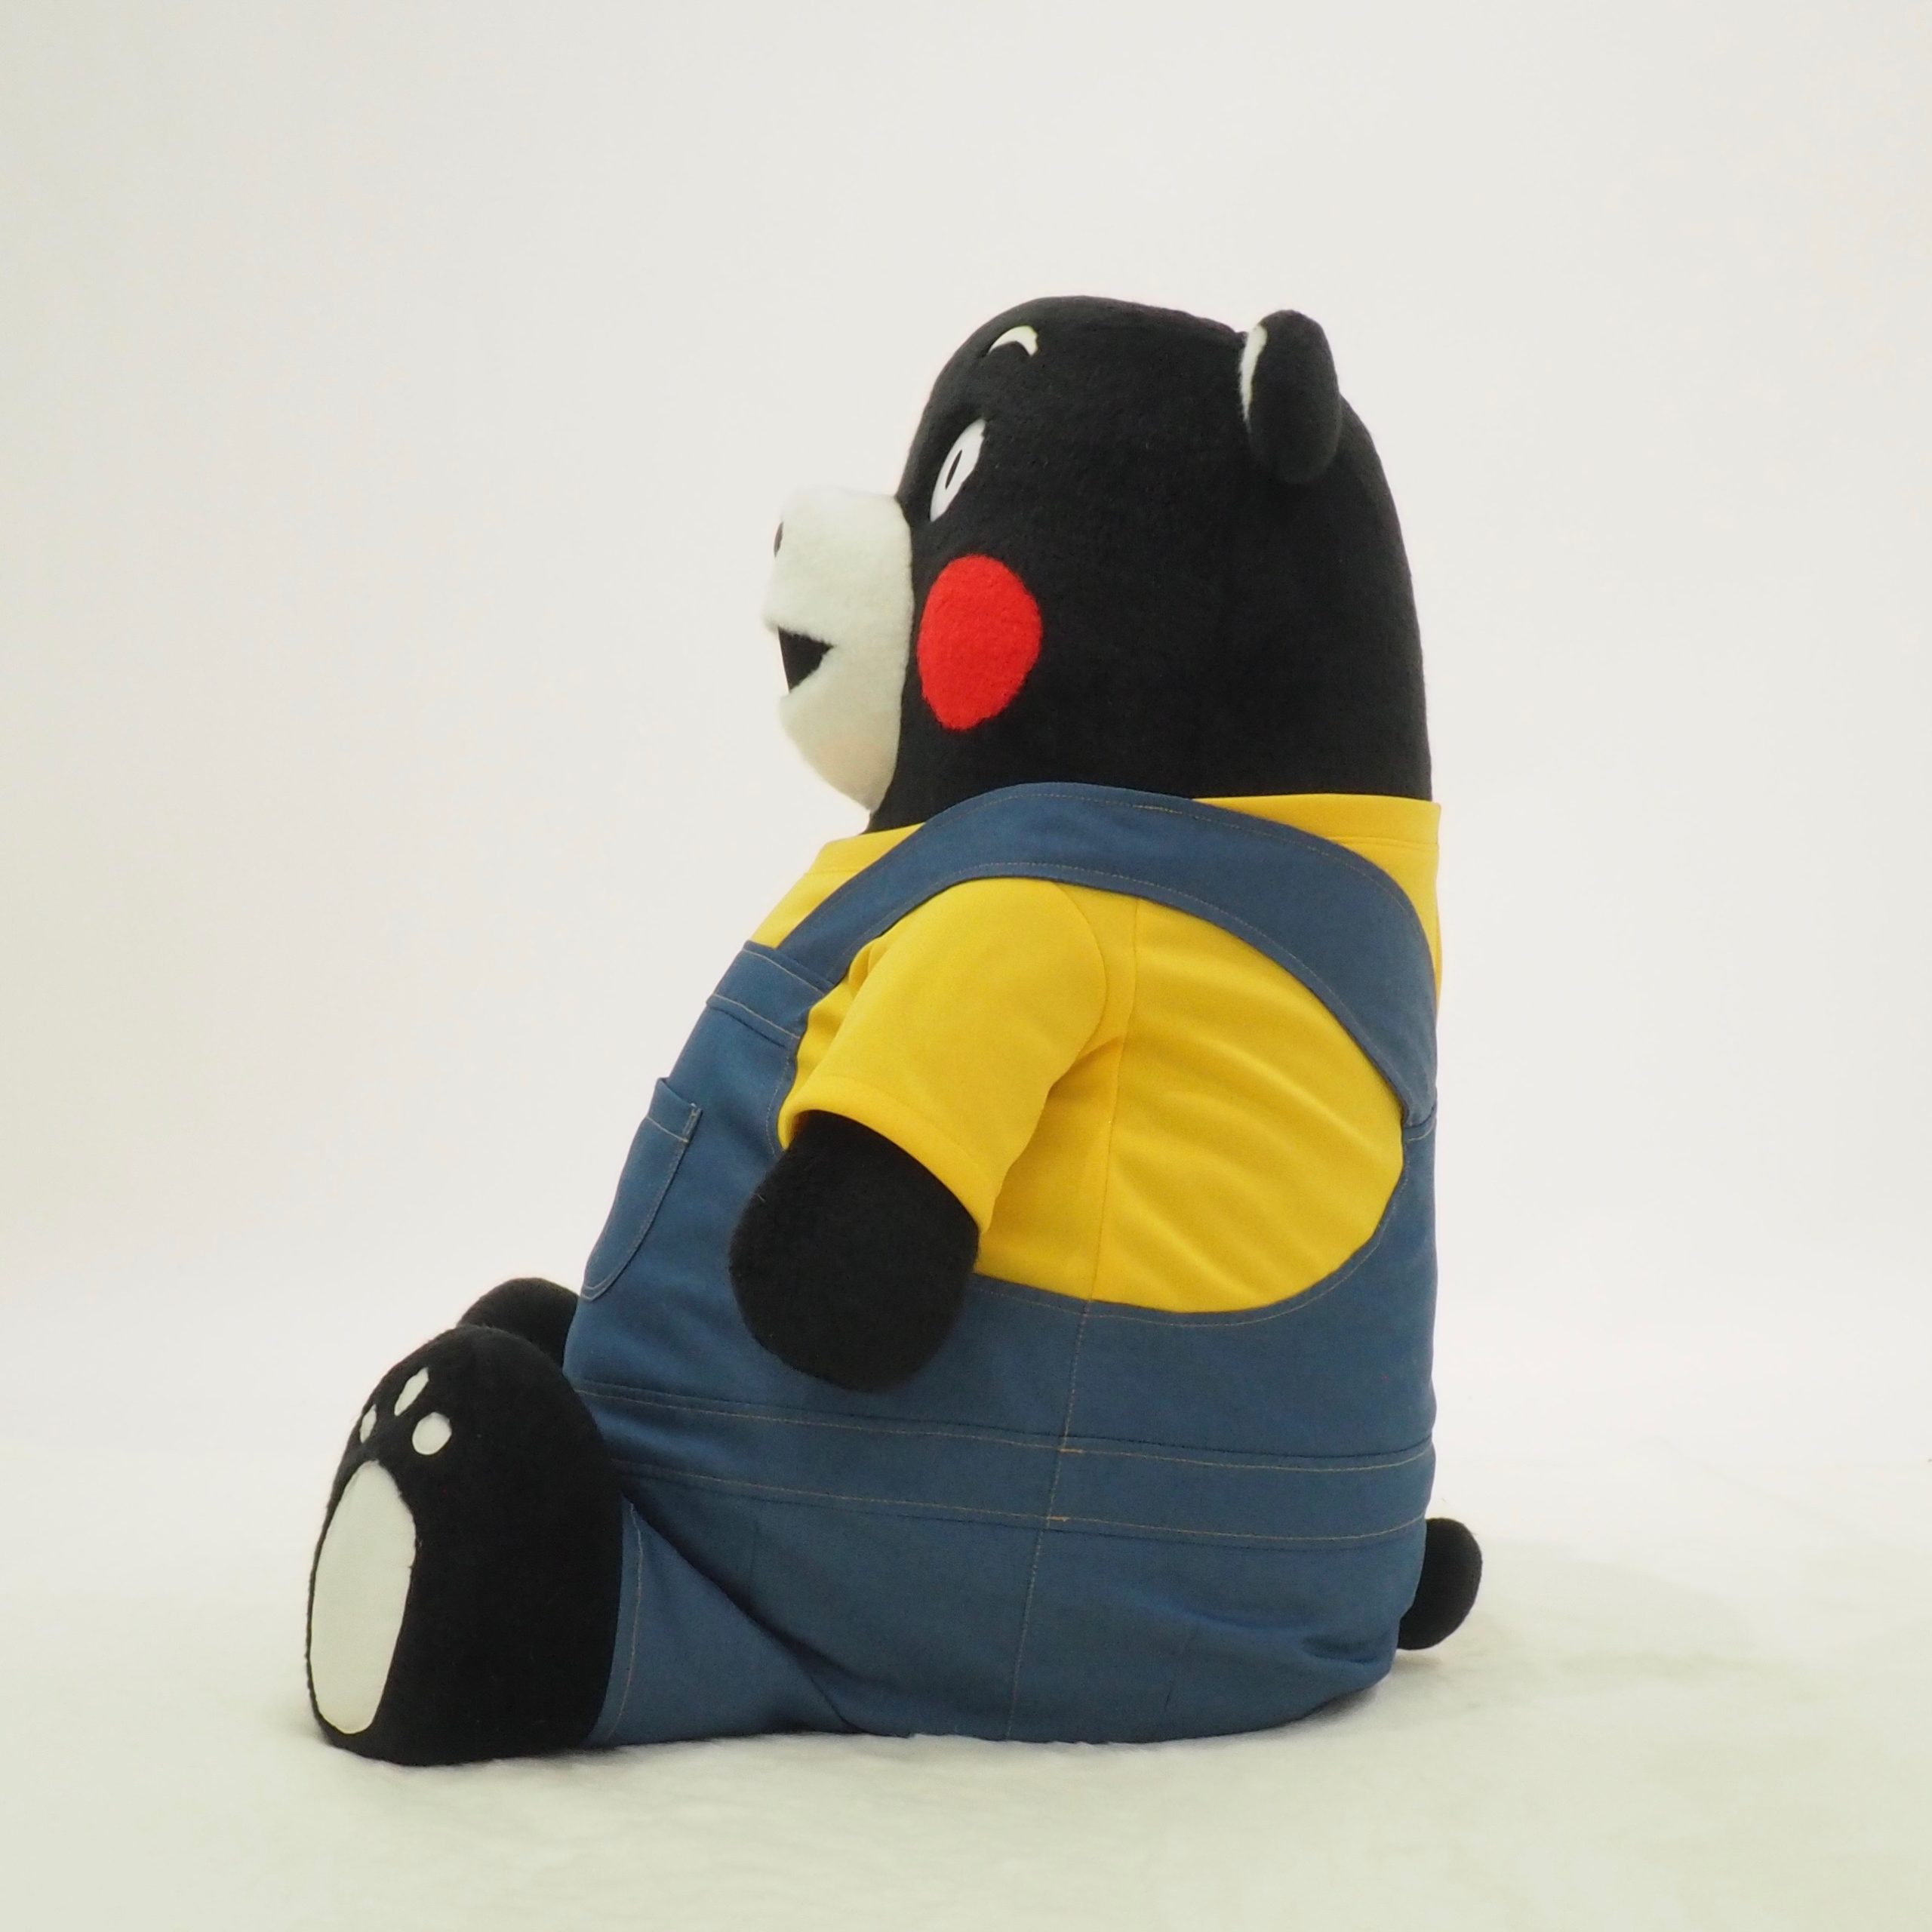 くまモンのぬいぐるみ用オーバーオール 受注生産 - KIGURUMI.BIZ 宮崎市の着ぐるみ制作会社